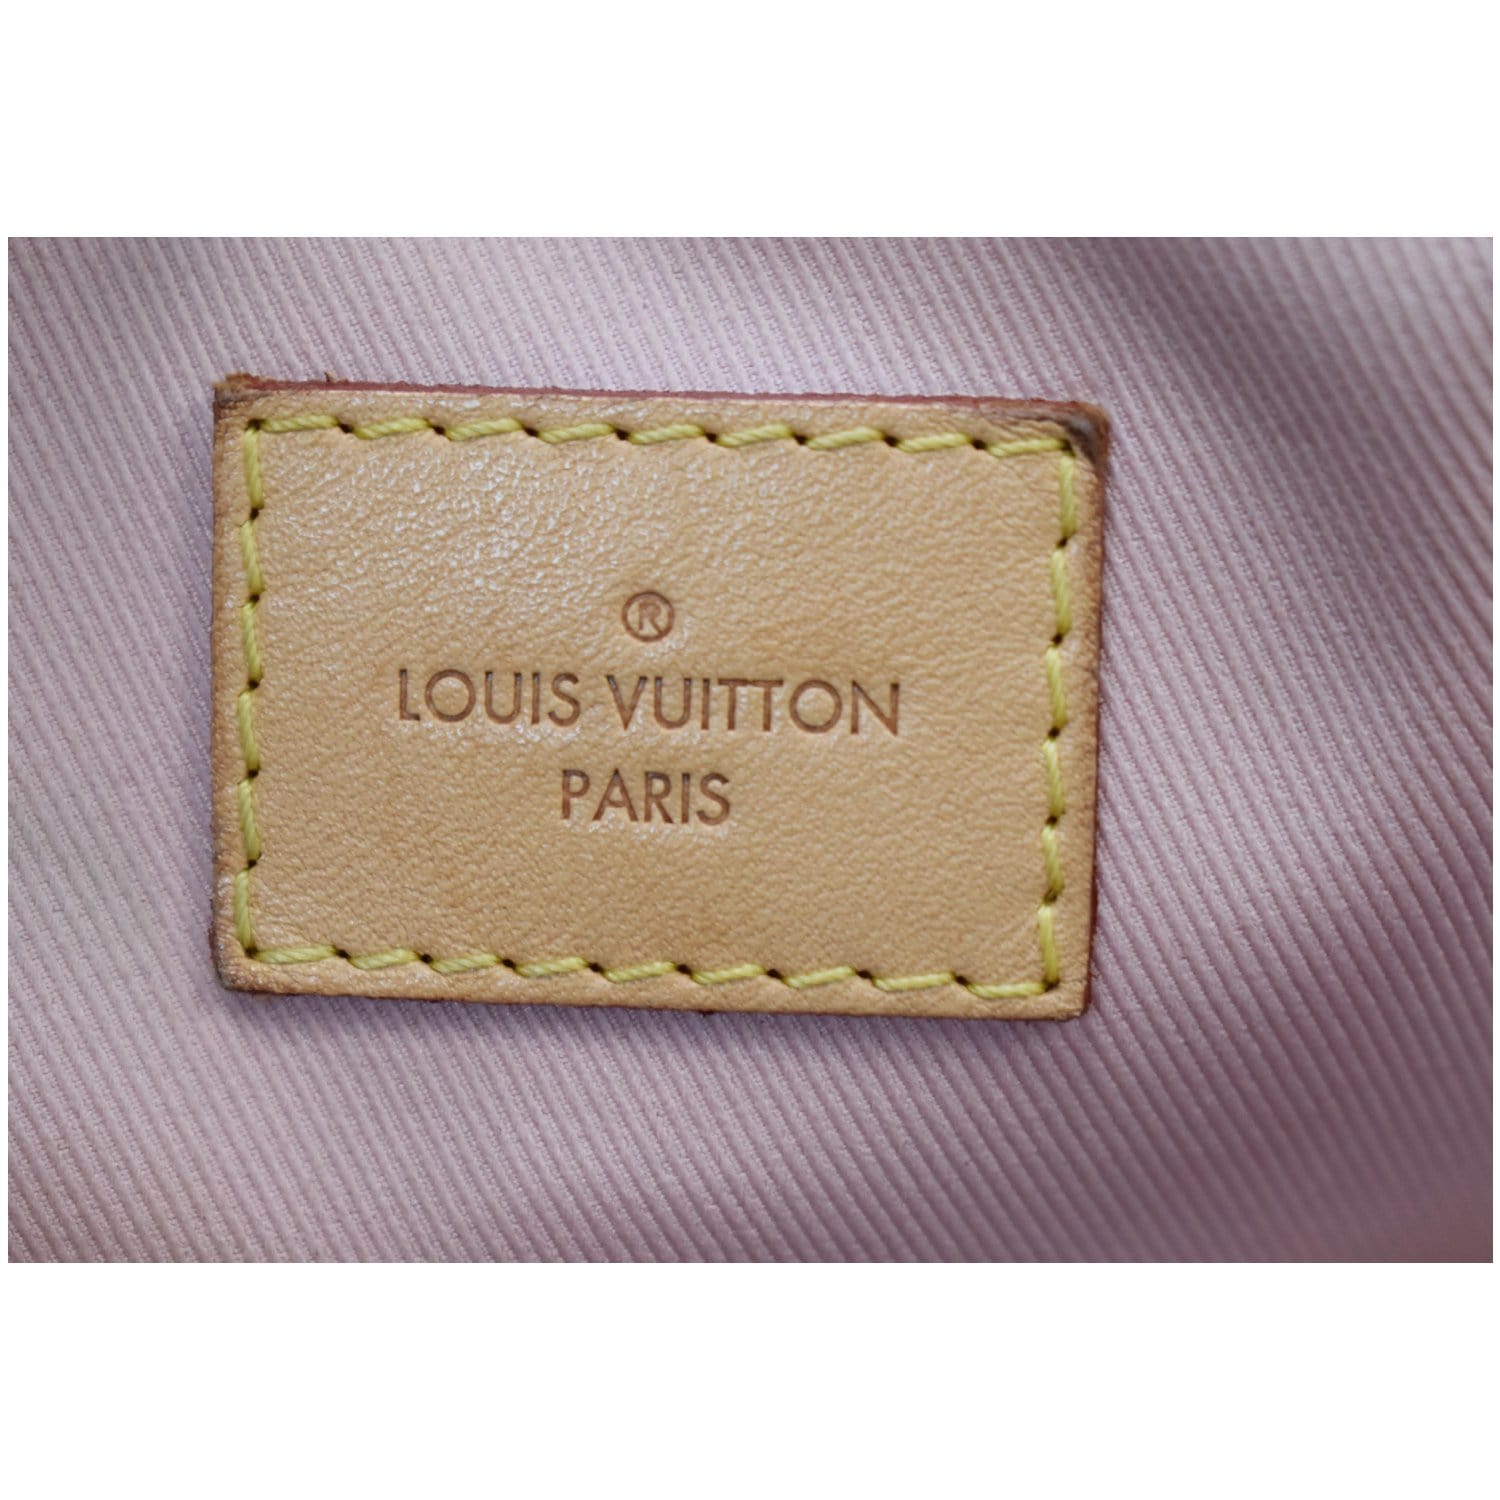 Louis Vuitton on LinkedIn: Fleur Du Déseet